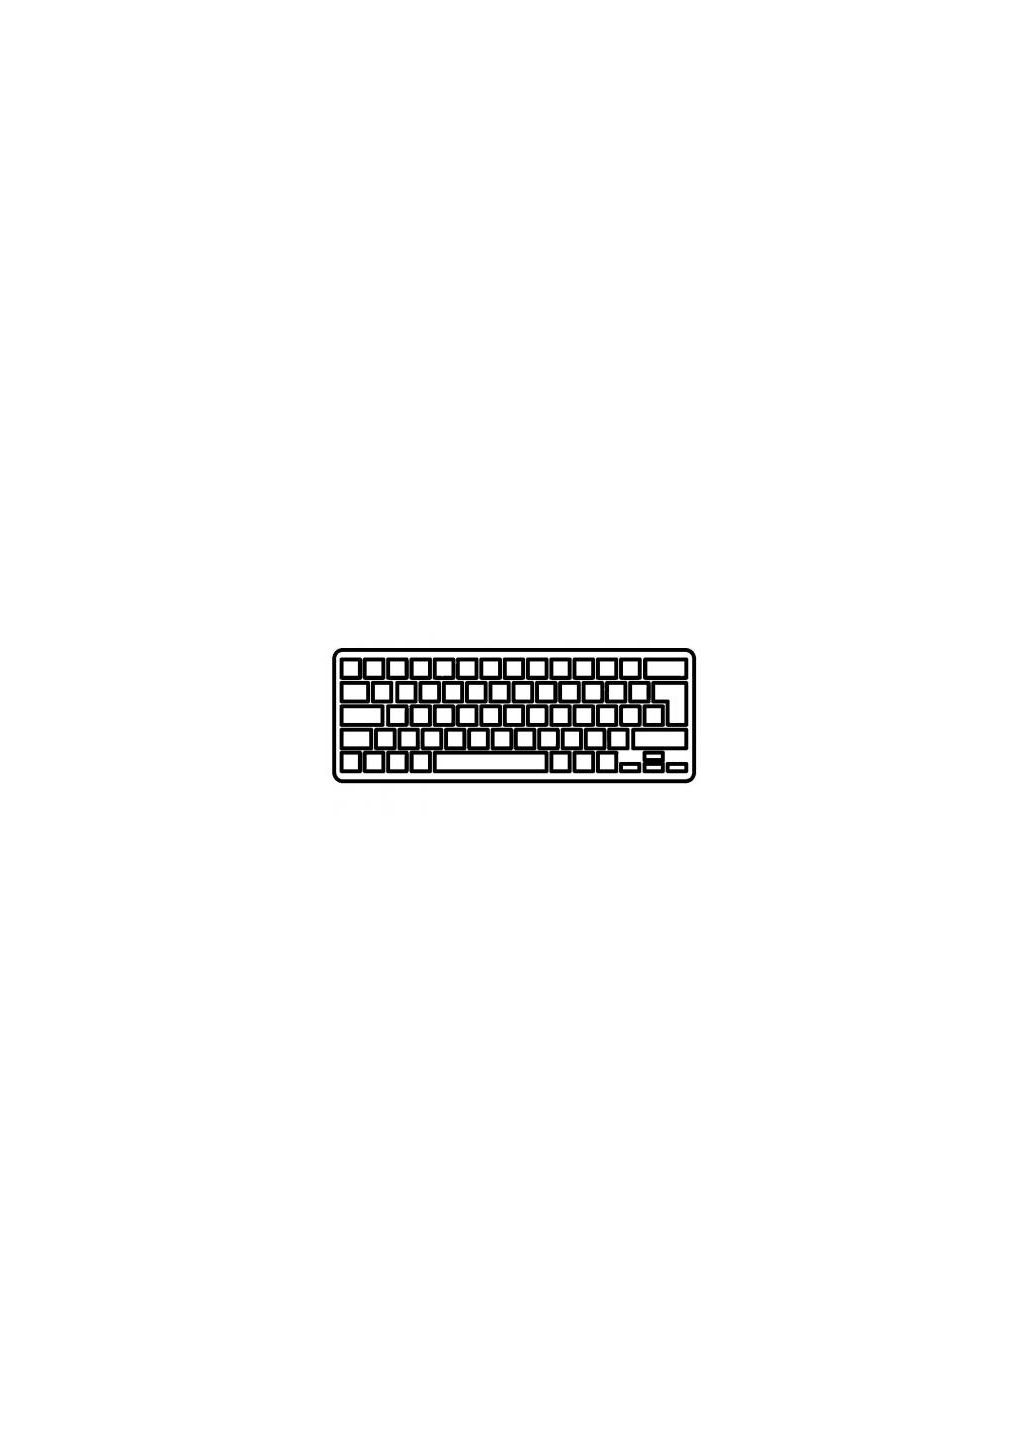 Клавиатура ноутбука Aspire 3830T без рамки UA (A43627) Acer aspire 3830t черная без рамки ua (276707569)